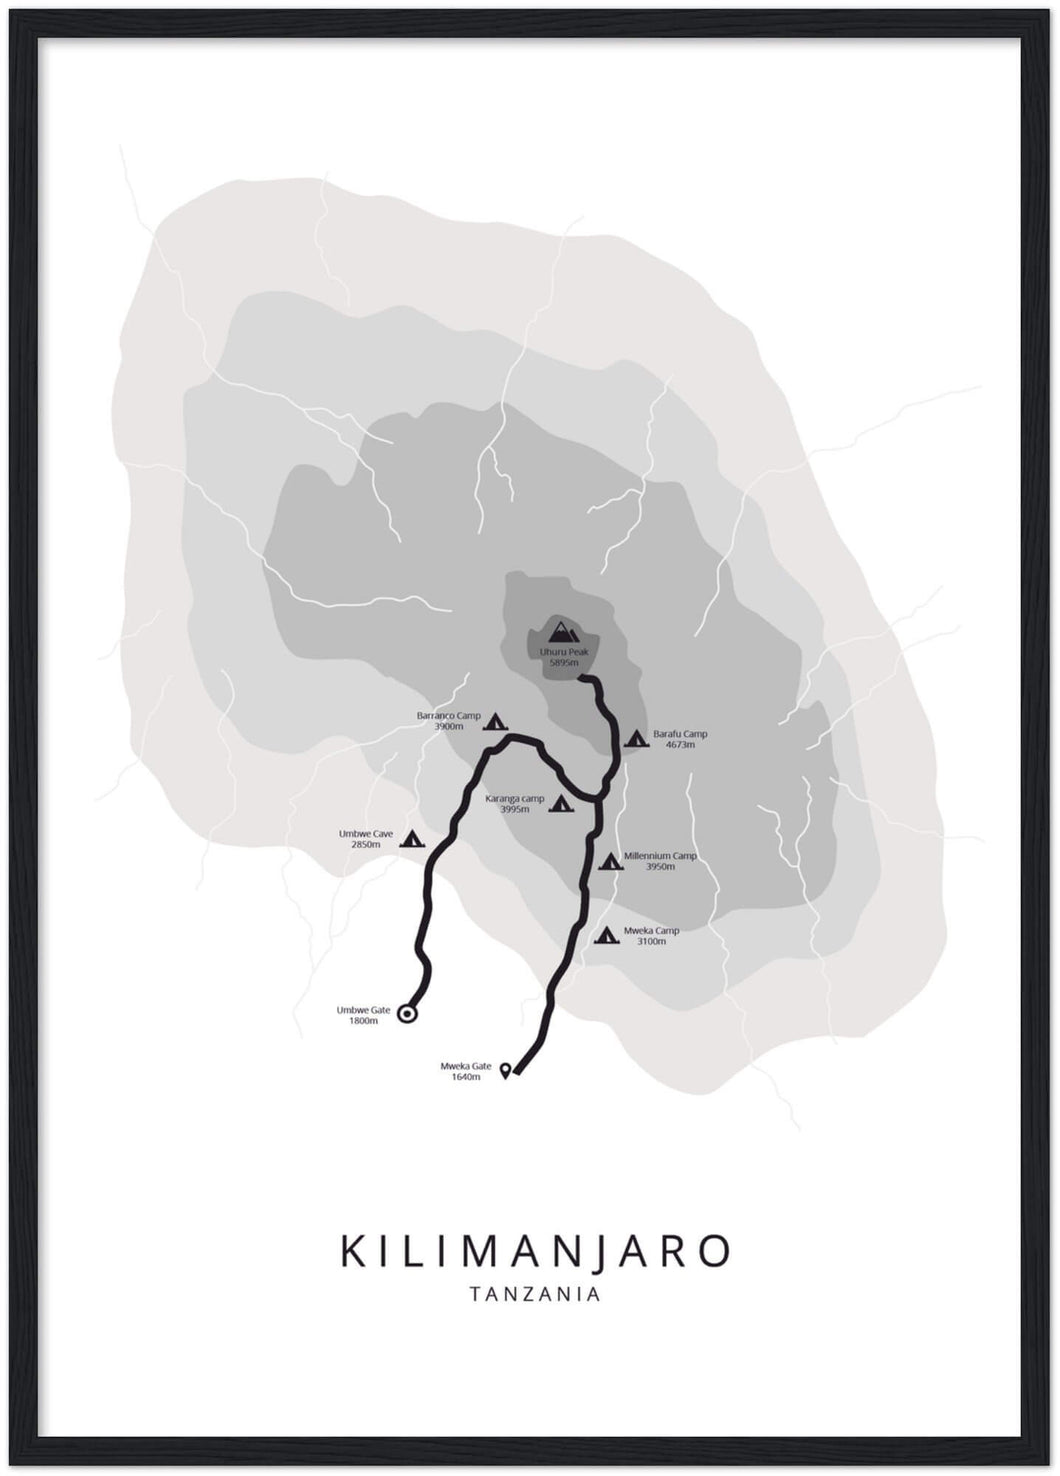 Kilimanjaro poster (Umbwe)